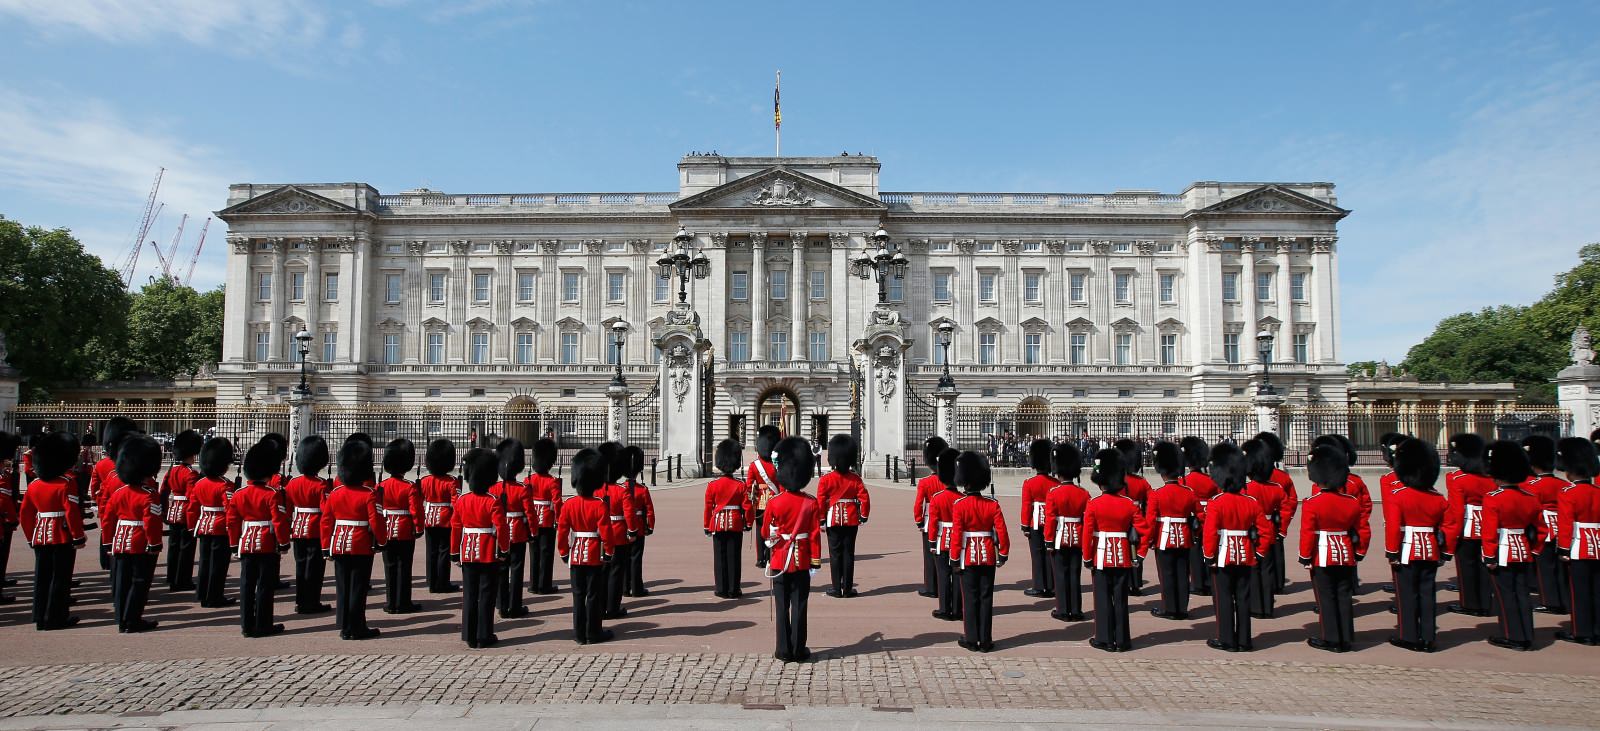 Hình ảnh đẹp ấn tượng về cung điện Buckingham